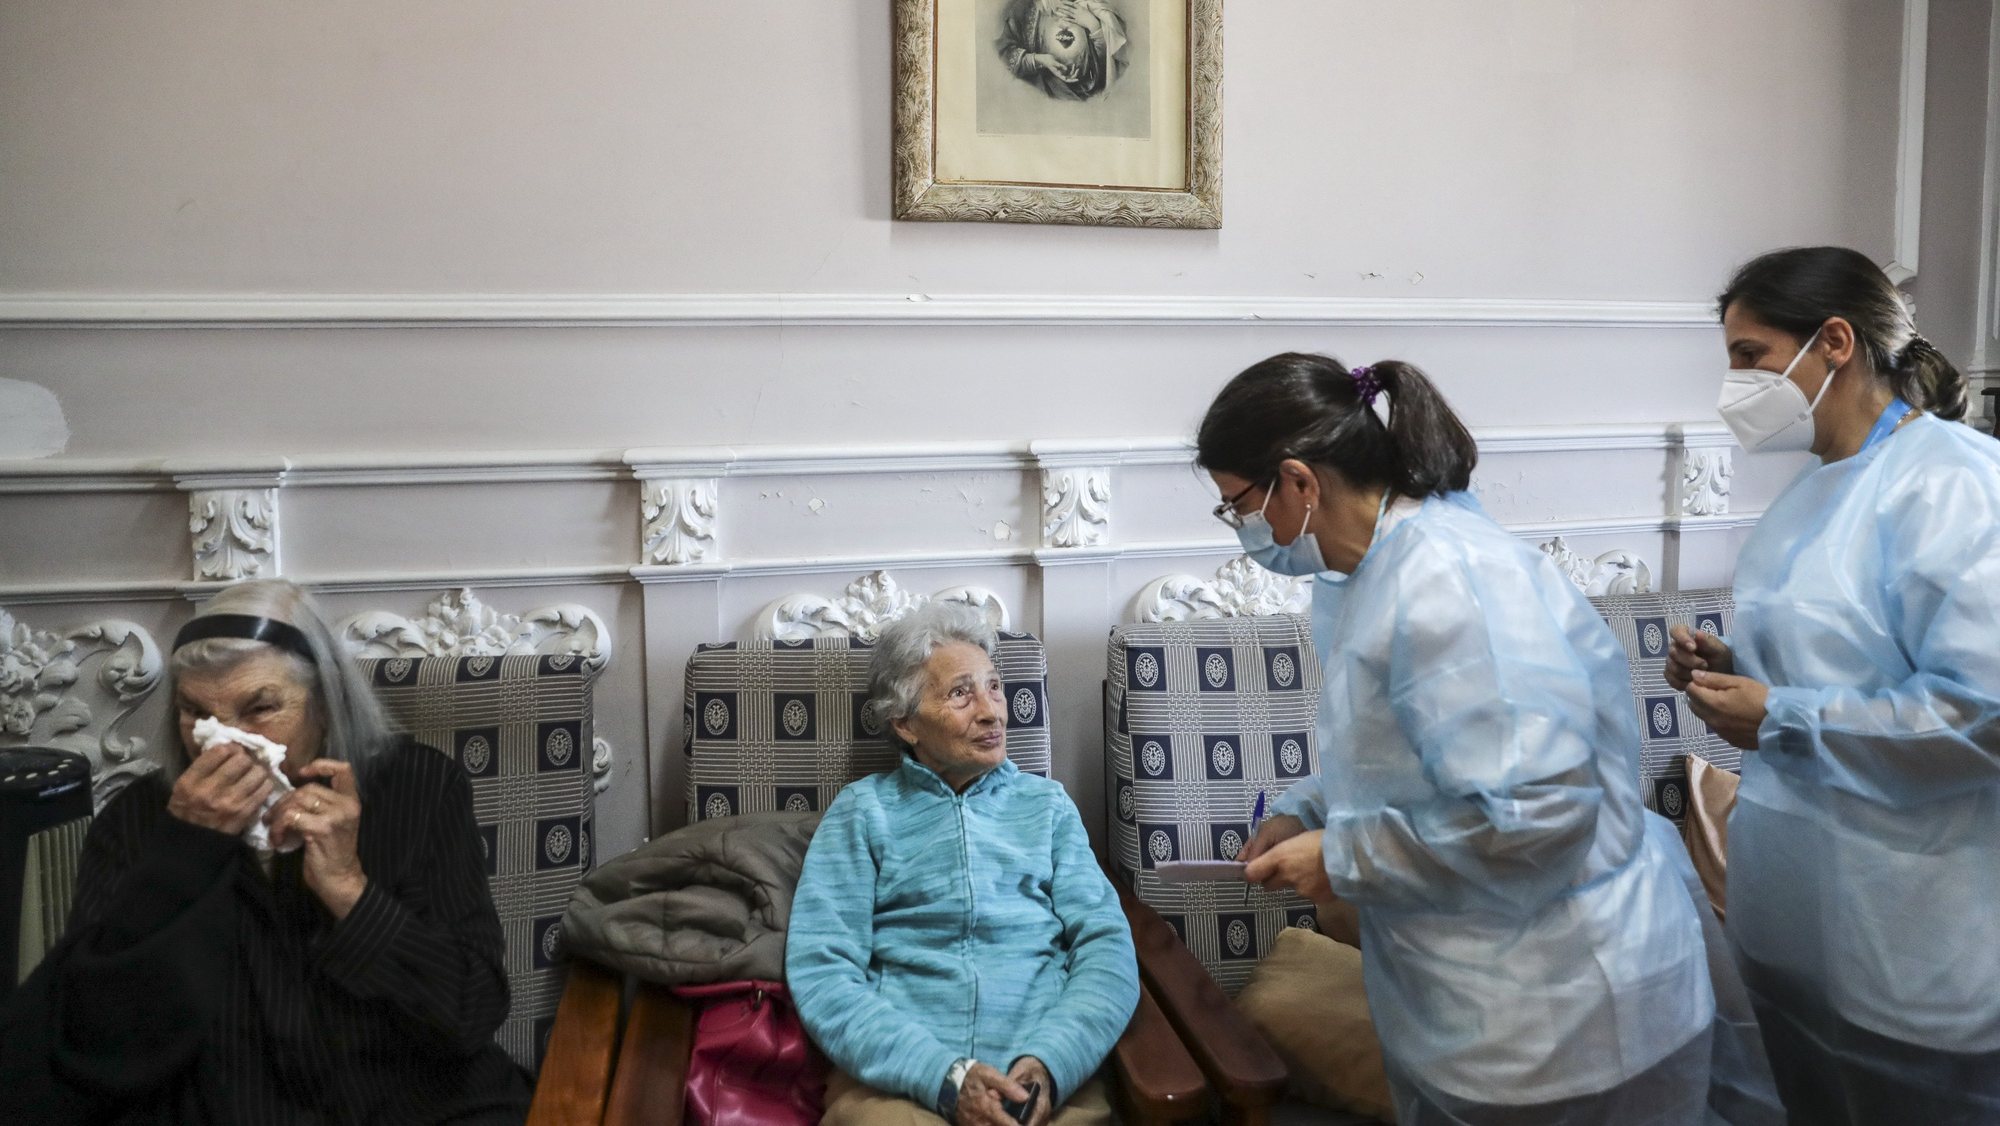 Uma utente de um lar de terceira idade conversa com enfermeiras momentos antes de ser vacinada com a quinta dose da vacina contra a covid-19, em Lisboa, 19 de maio de 2022. TIAGO PETINGA/LUSA